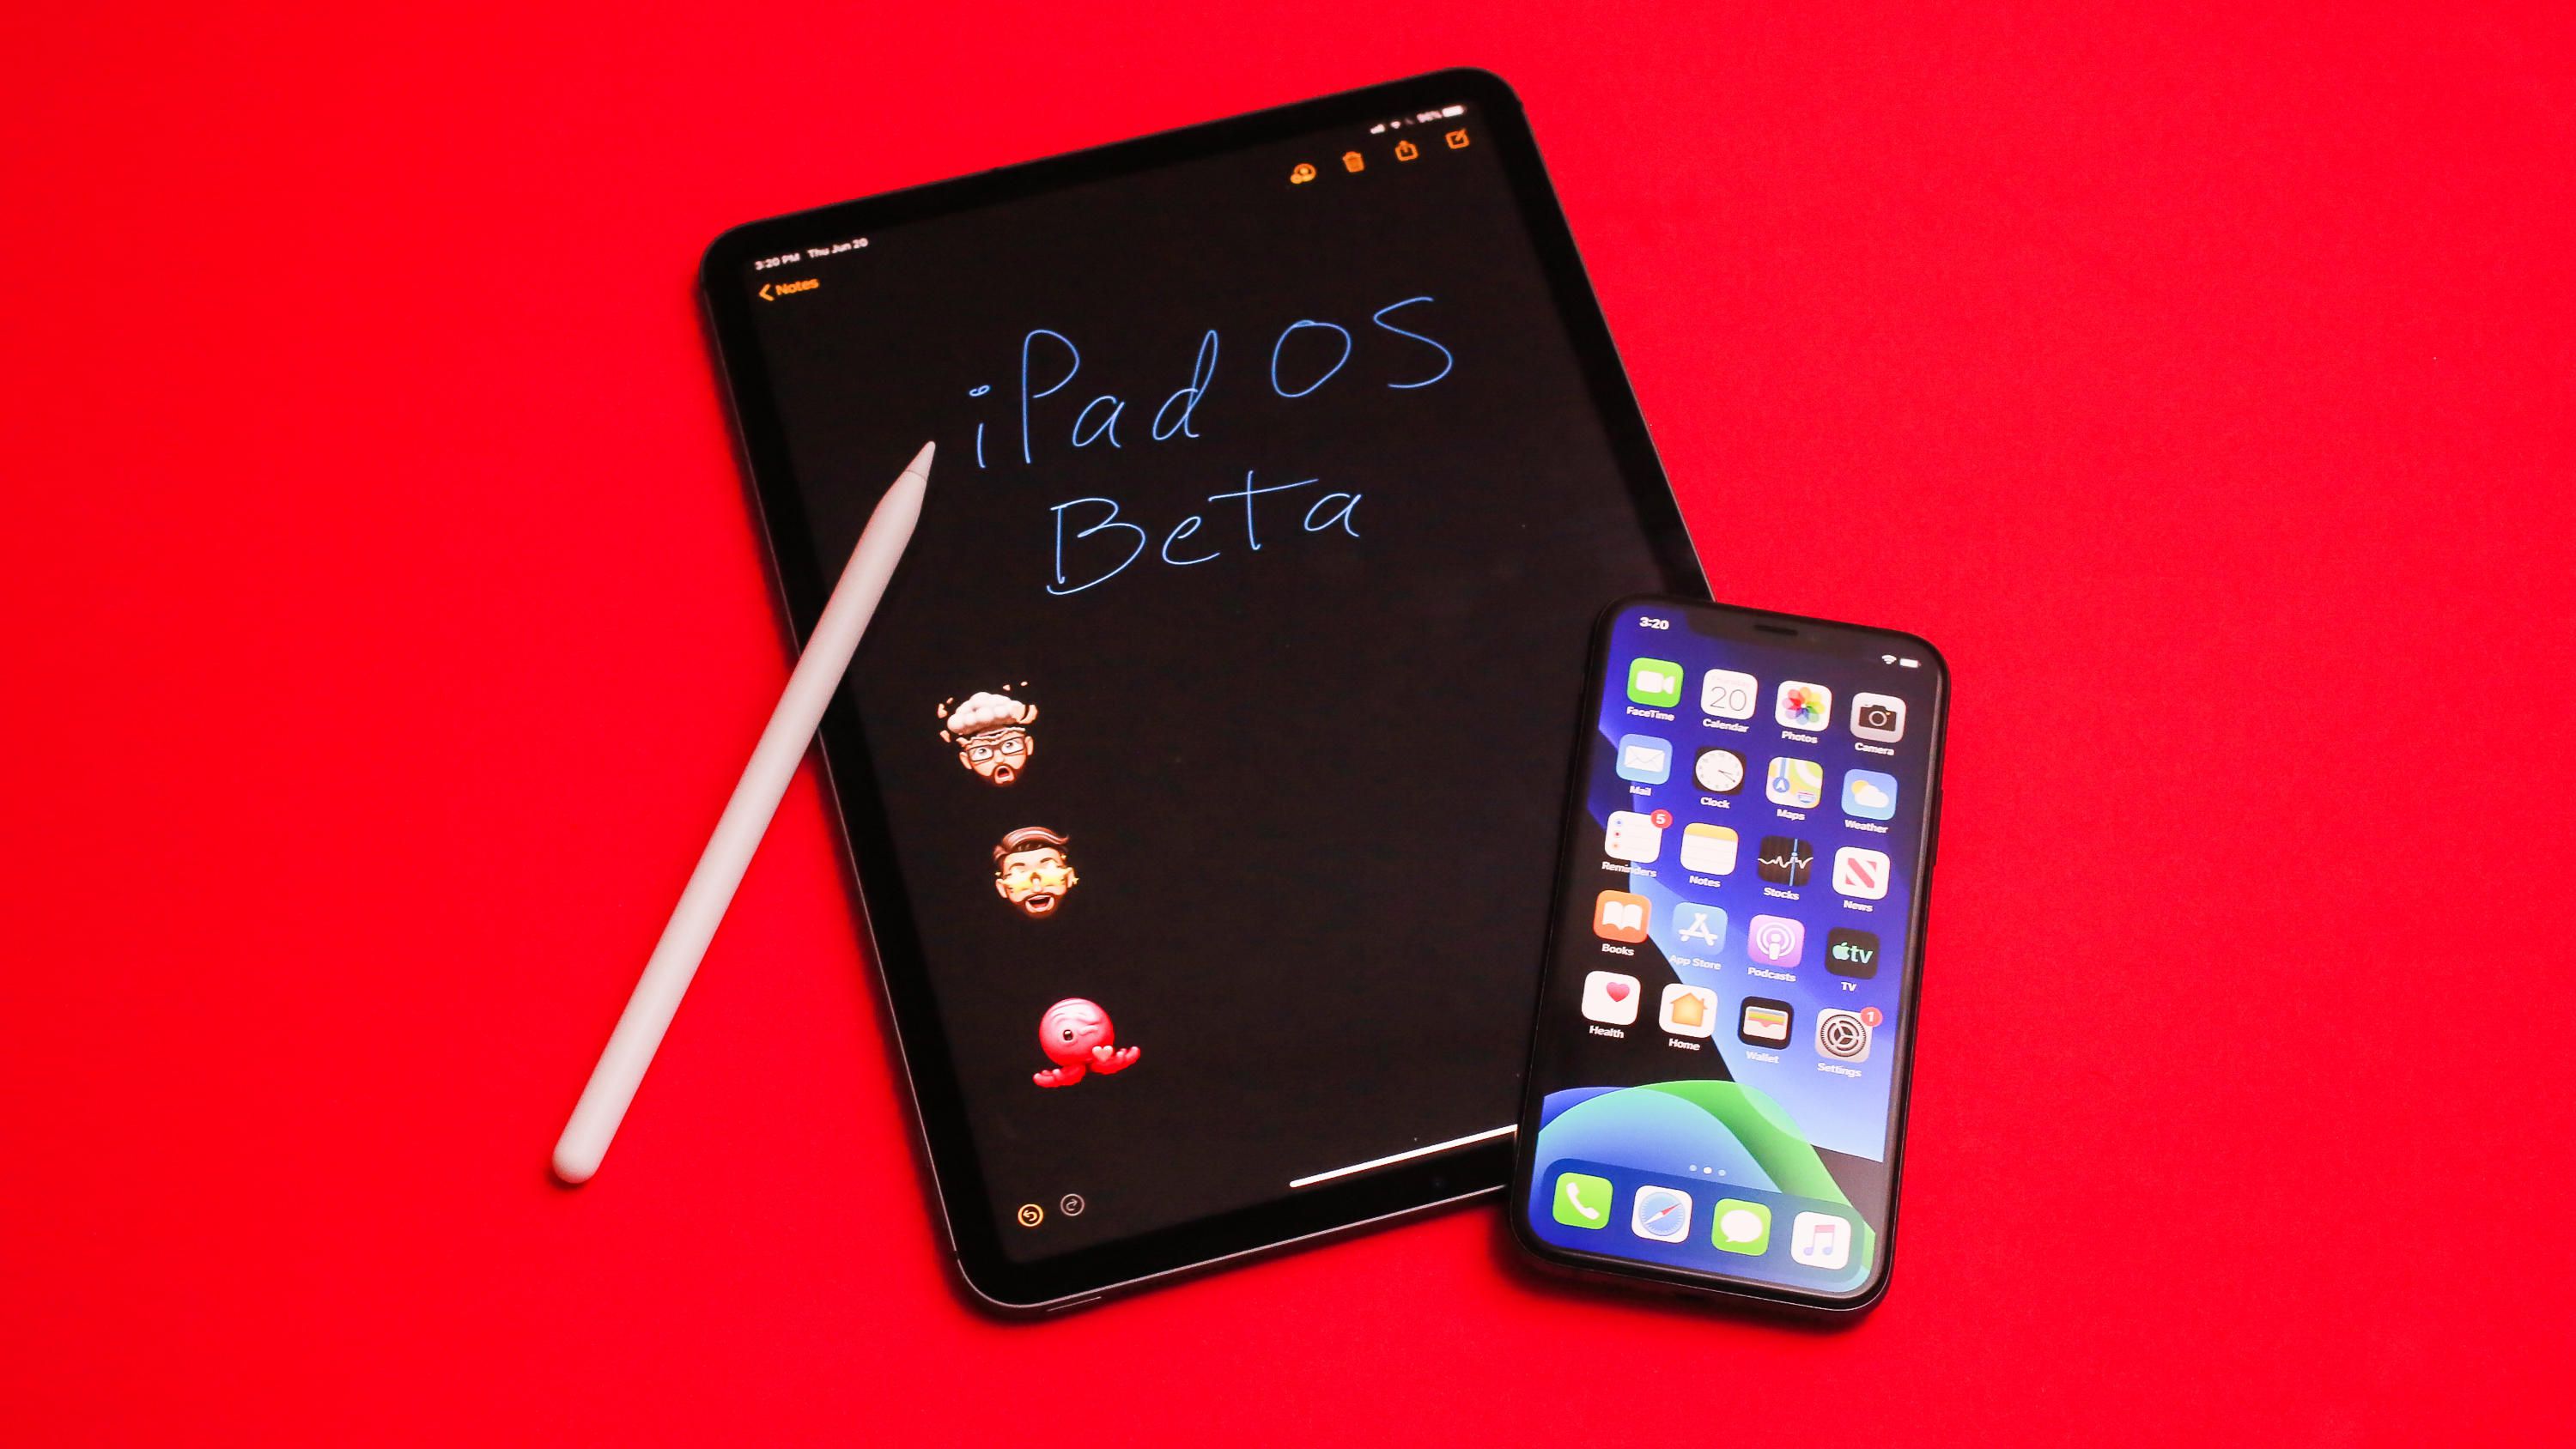 Co je nového v rámci iOS 13 beta 3 a iPadOS beta 3